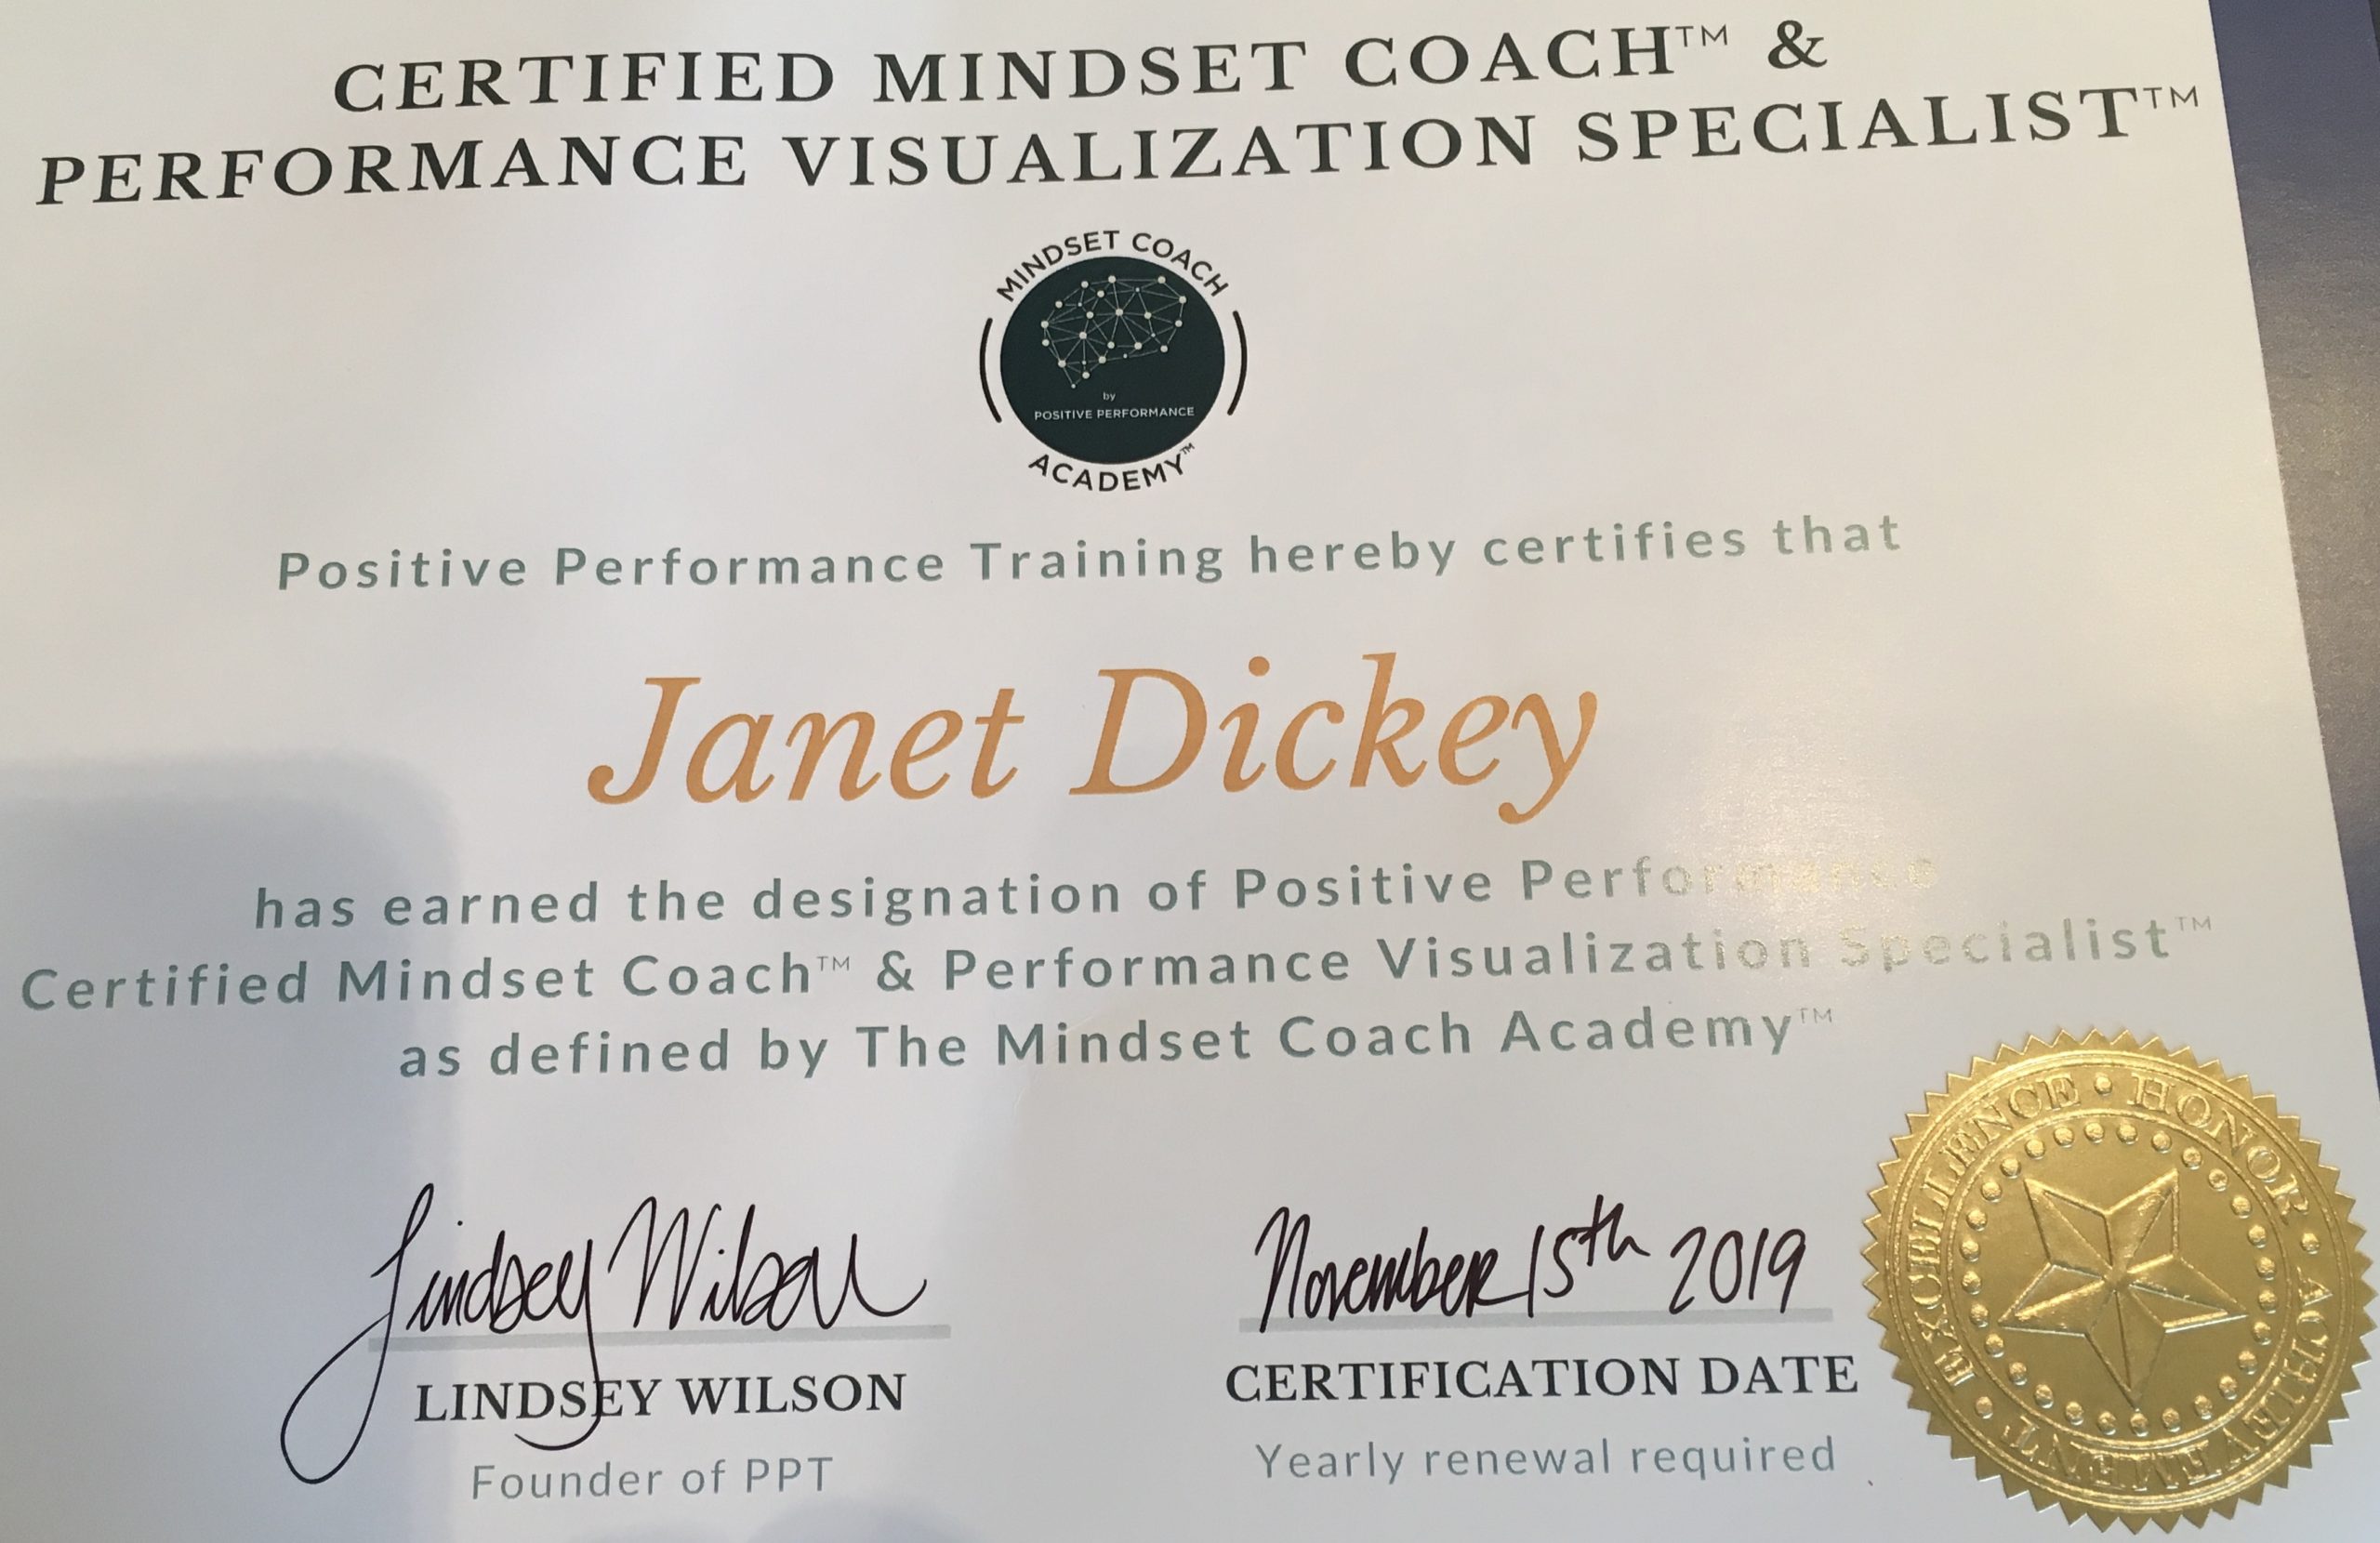 Mindset Coaching